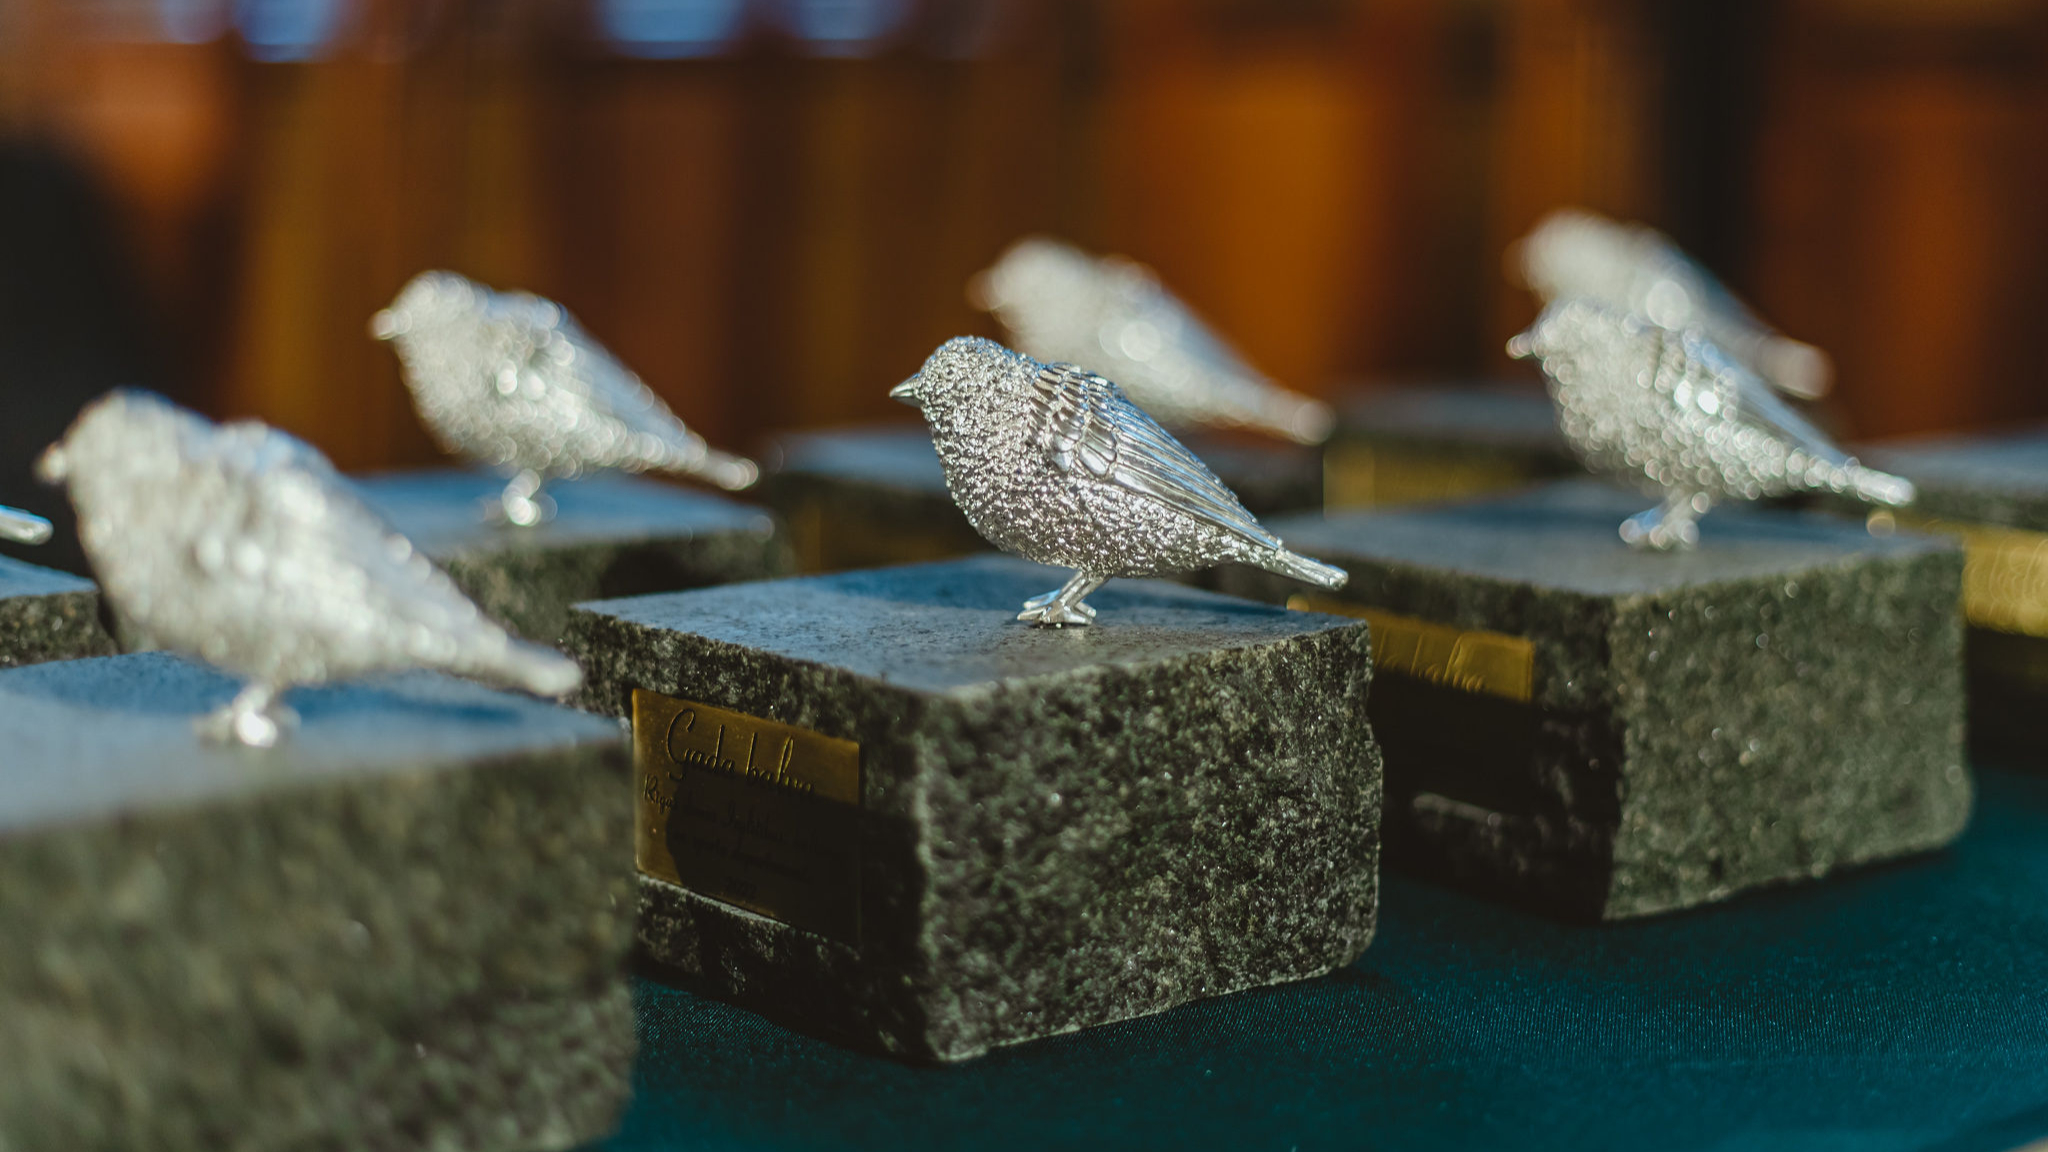 Astoņi laureāti saņēmuši Rīgas kultūras gada balvu “Baltais zvirbulis”